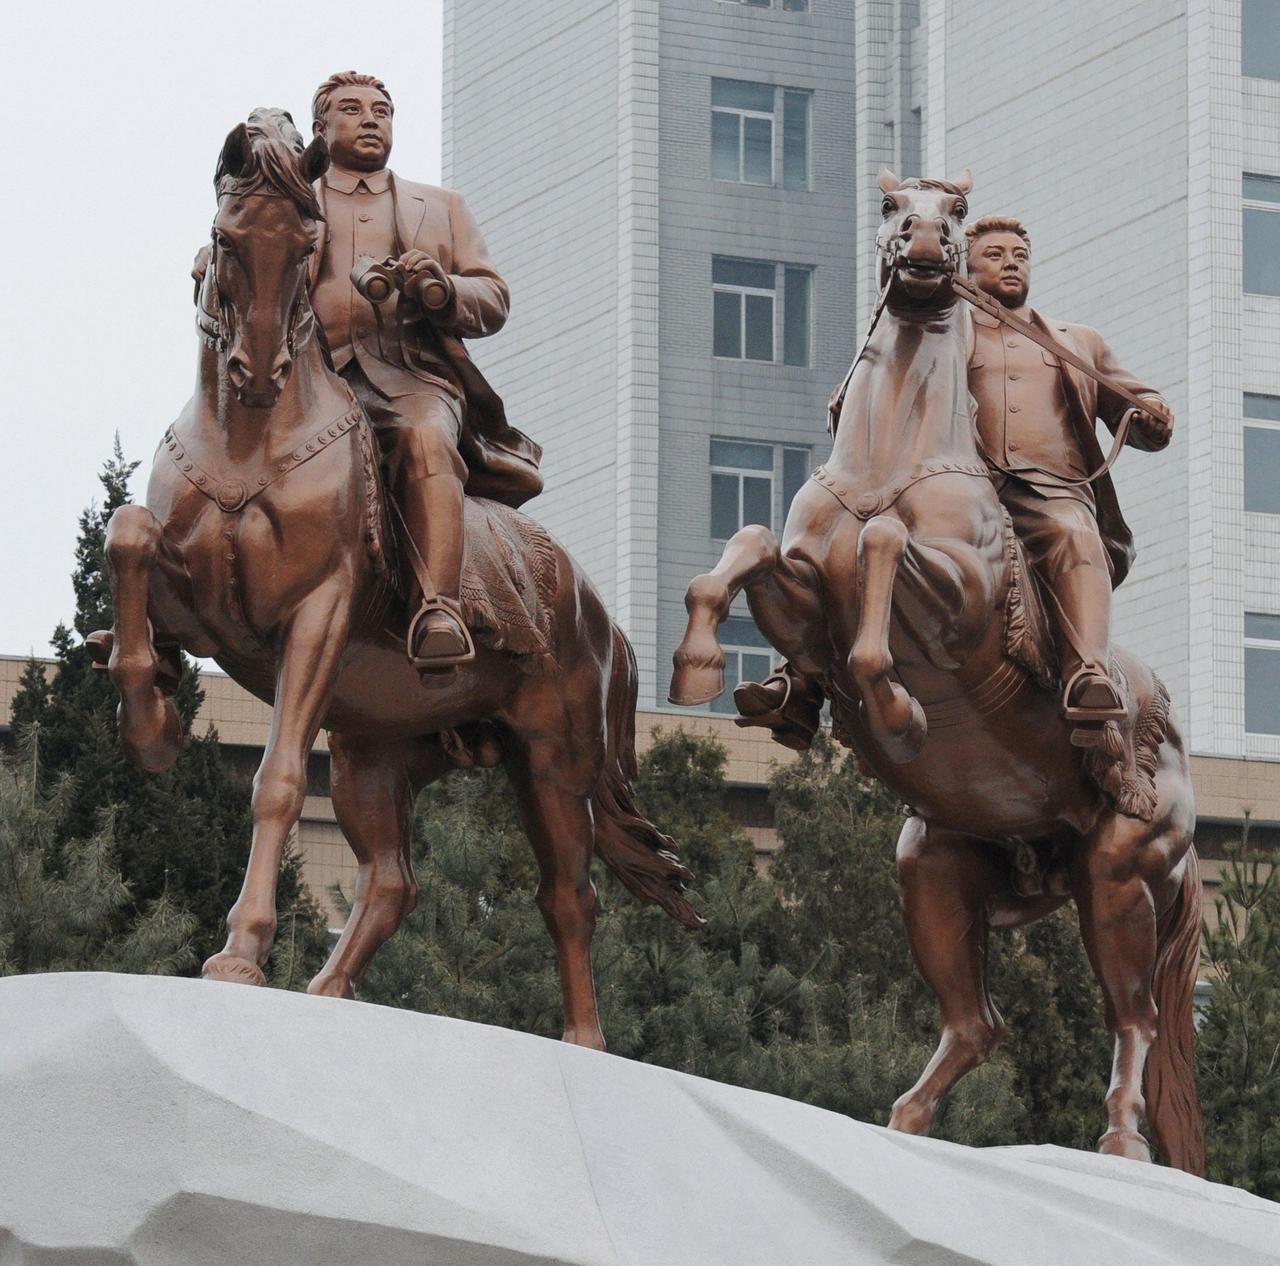 Jezdecká socha Kim Ir-sena a jeho syna Kim Čong-ila